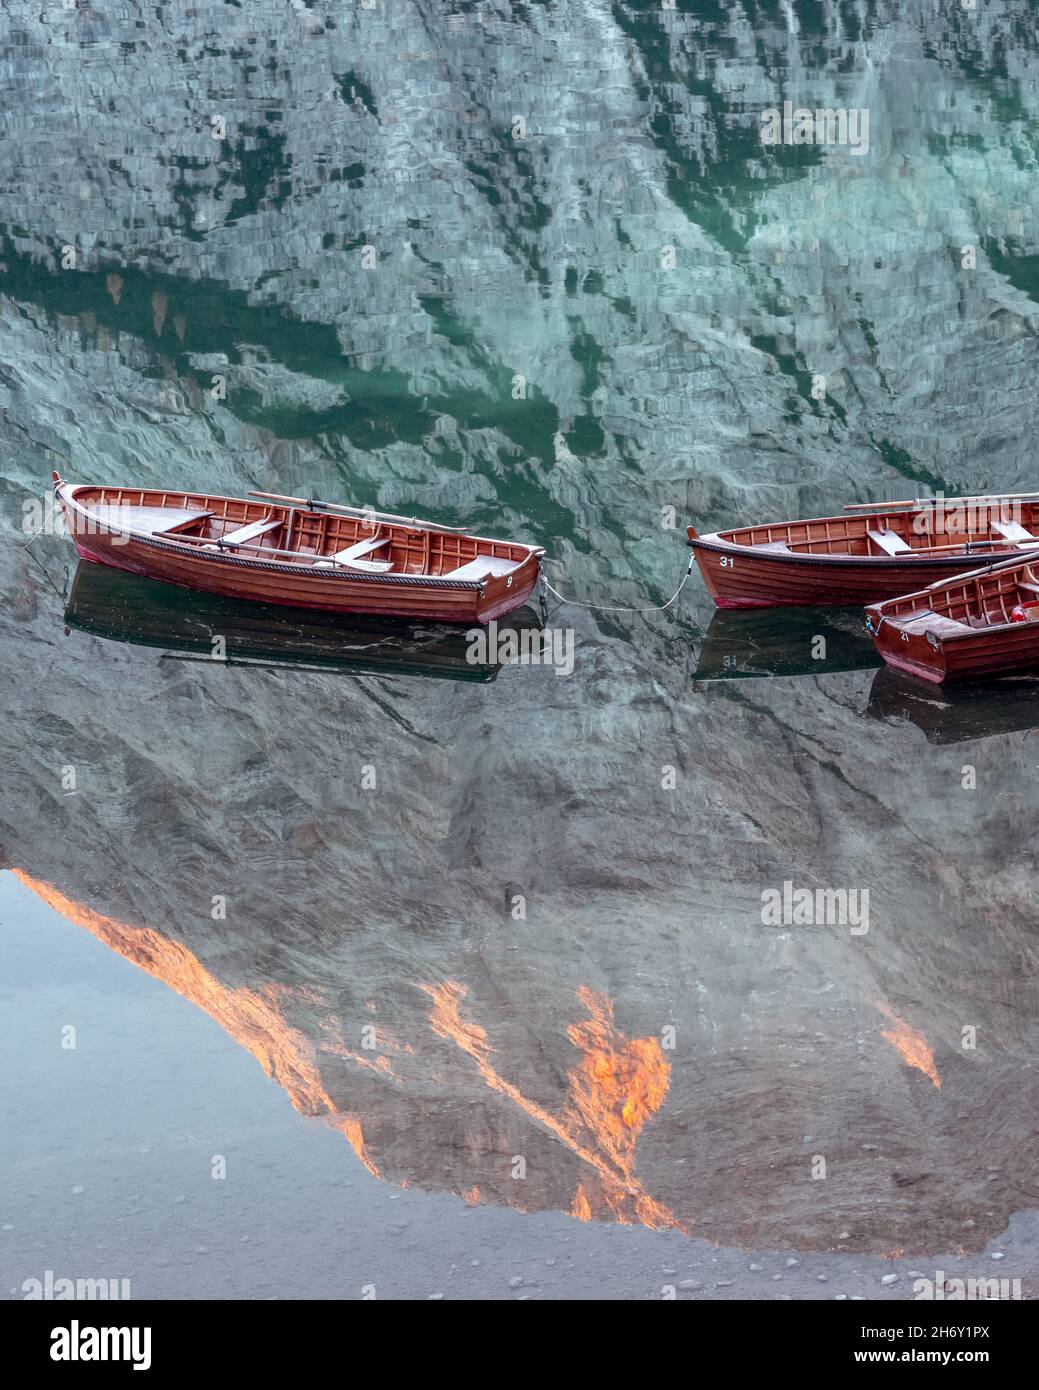 Paesaggio pittoresco con il famoso lago di Braies in autunno Dolomiti montagne. Barche in legno nelle acque limpide del Lago di Braies, Alpi dolomitiche, Italia. Scintillante vetta del monte Seekofel in riflessione d'acqua Foto Stock